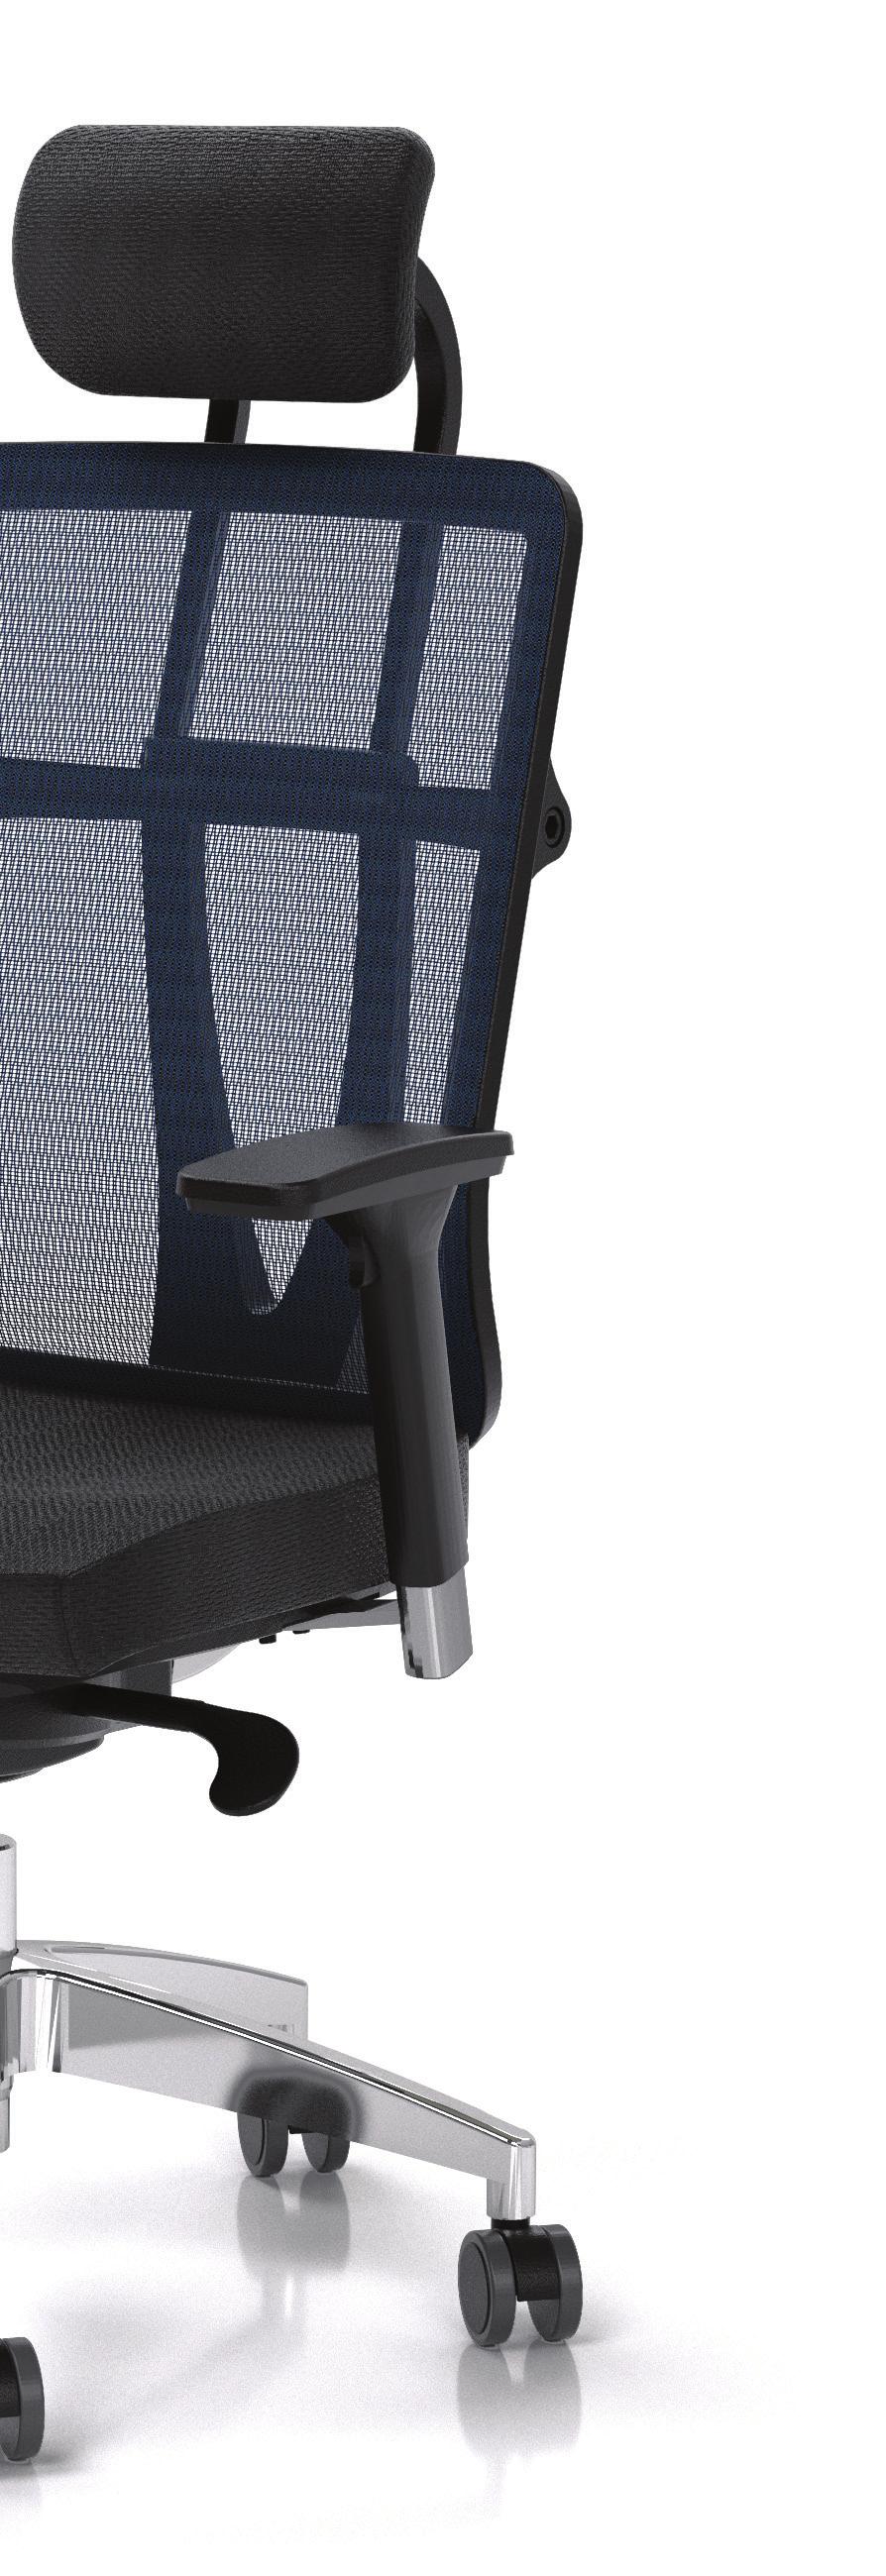 Regulowane siedzisko Prosta linia siedziska jest zakończona ergonomicznym zakrzywieniem, zapewniającym odpowiednie wsparcie kolan.